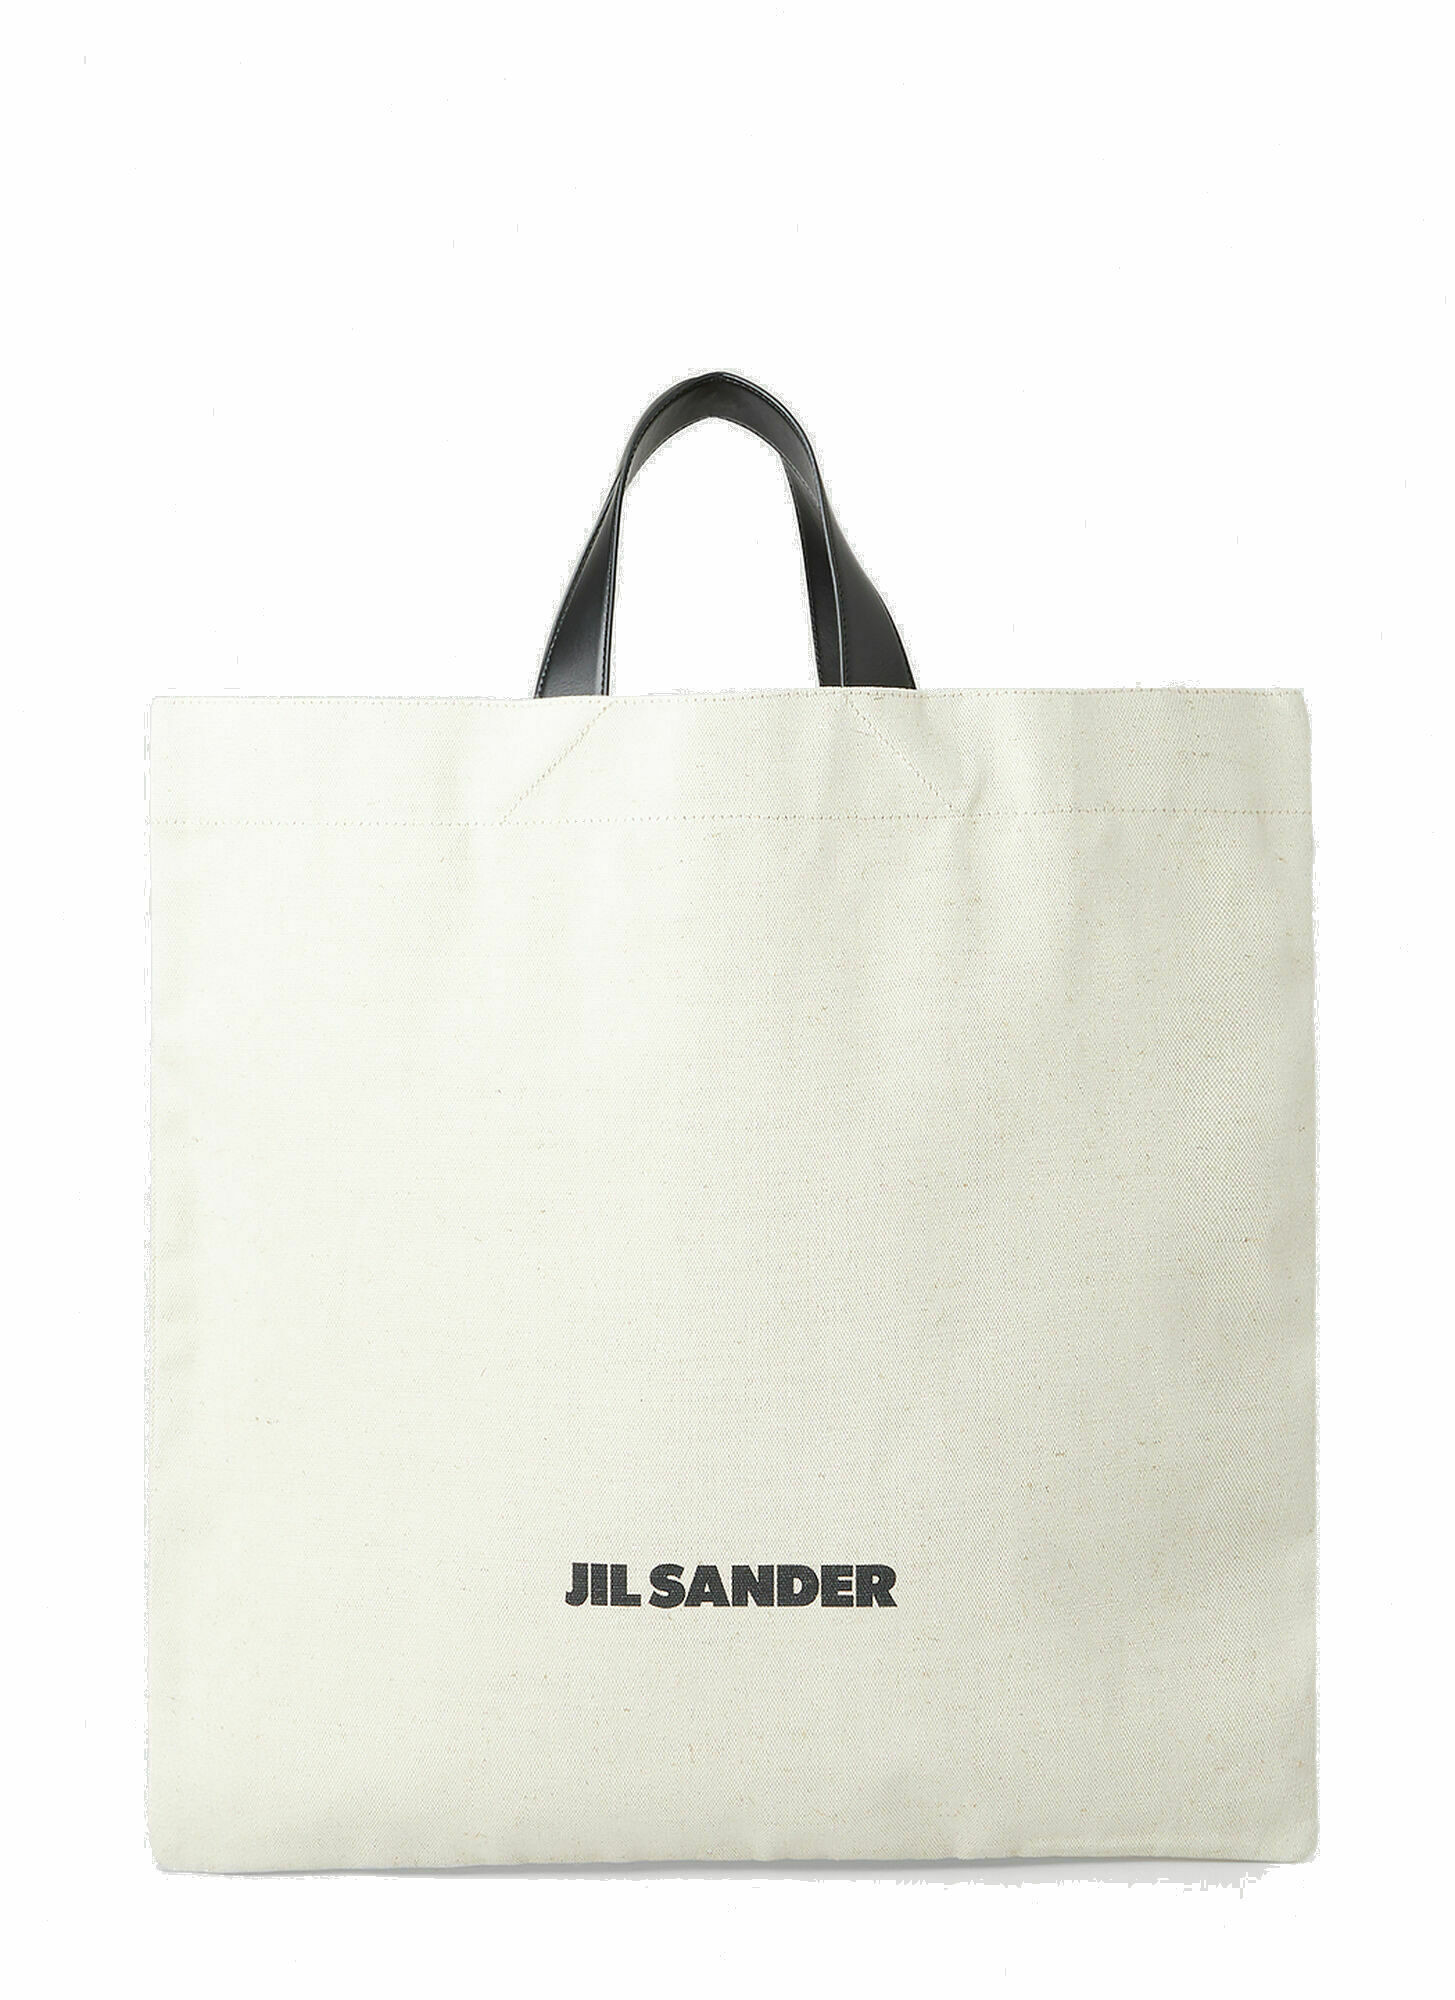 Photo: Square Shopper Tote Bag in White